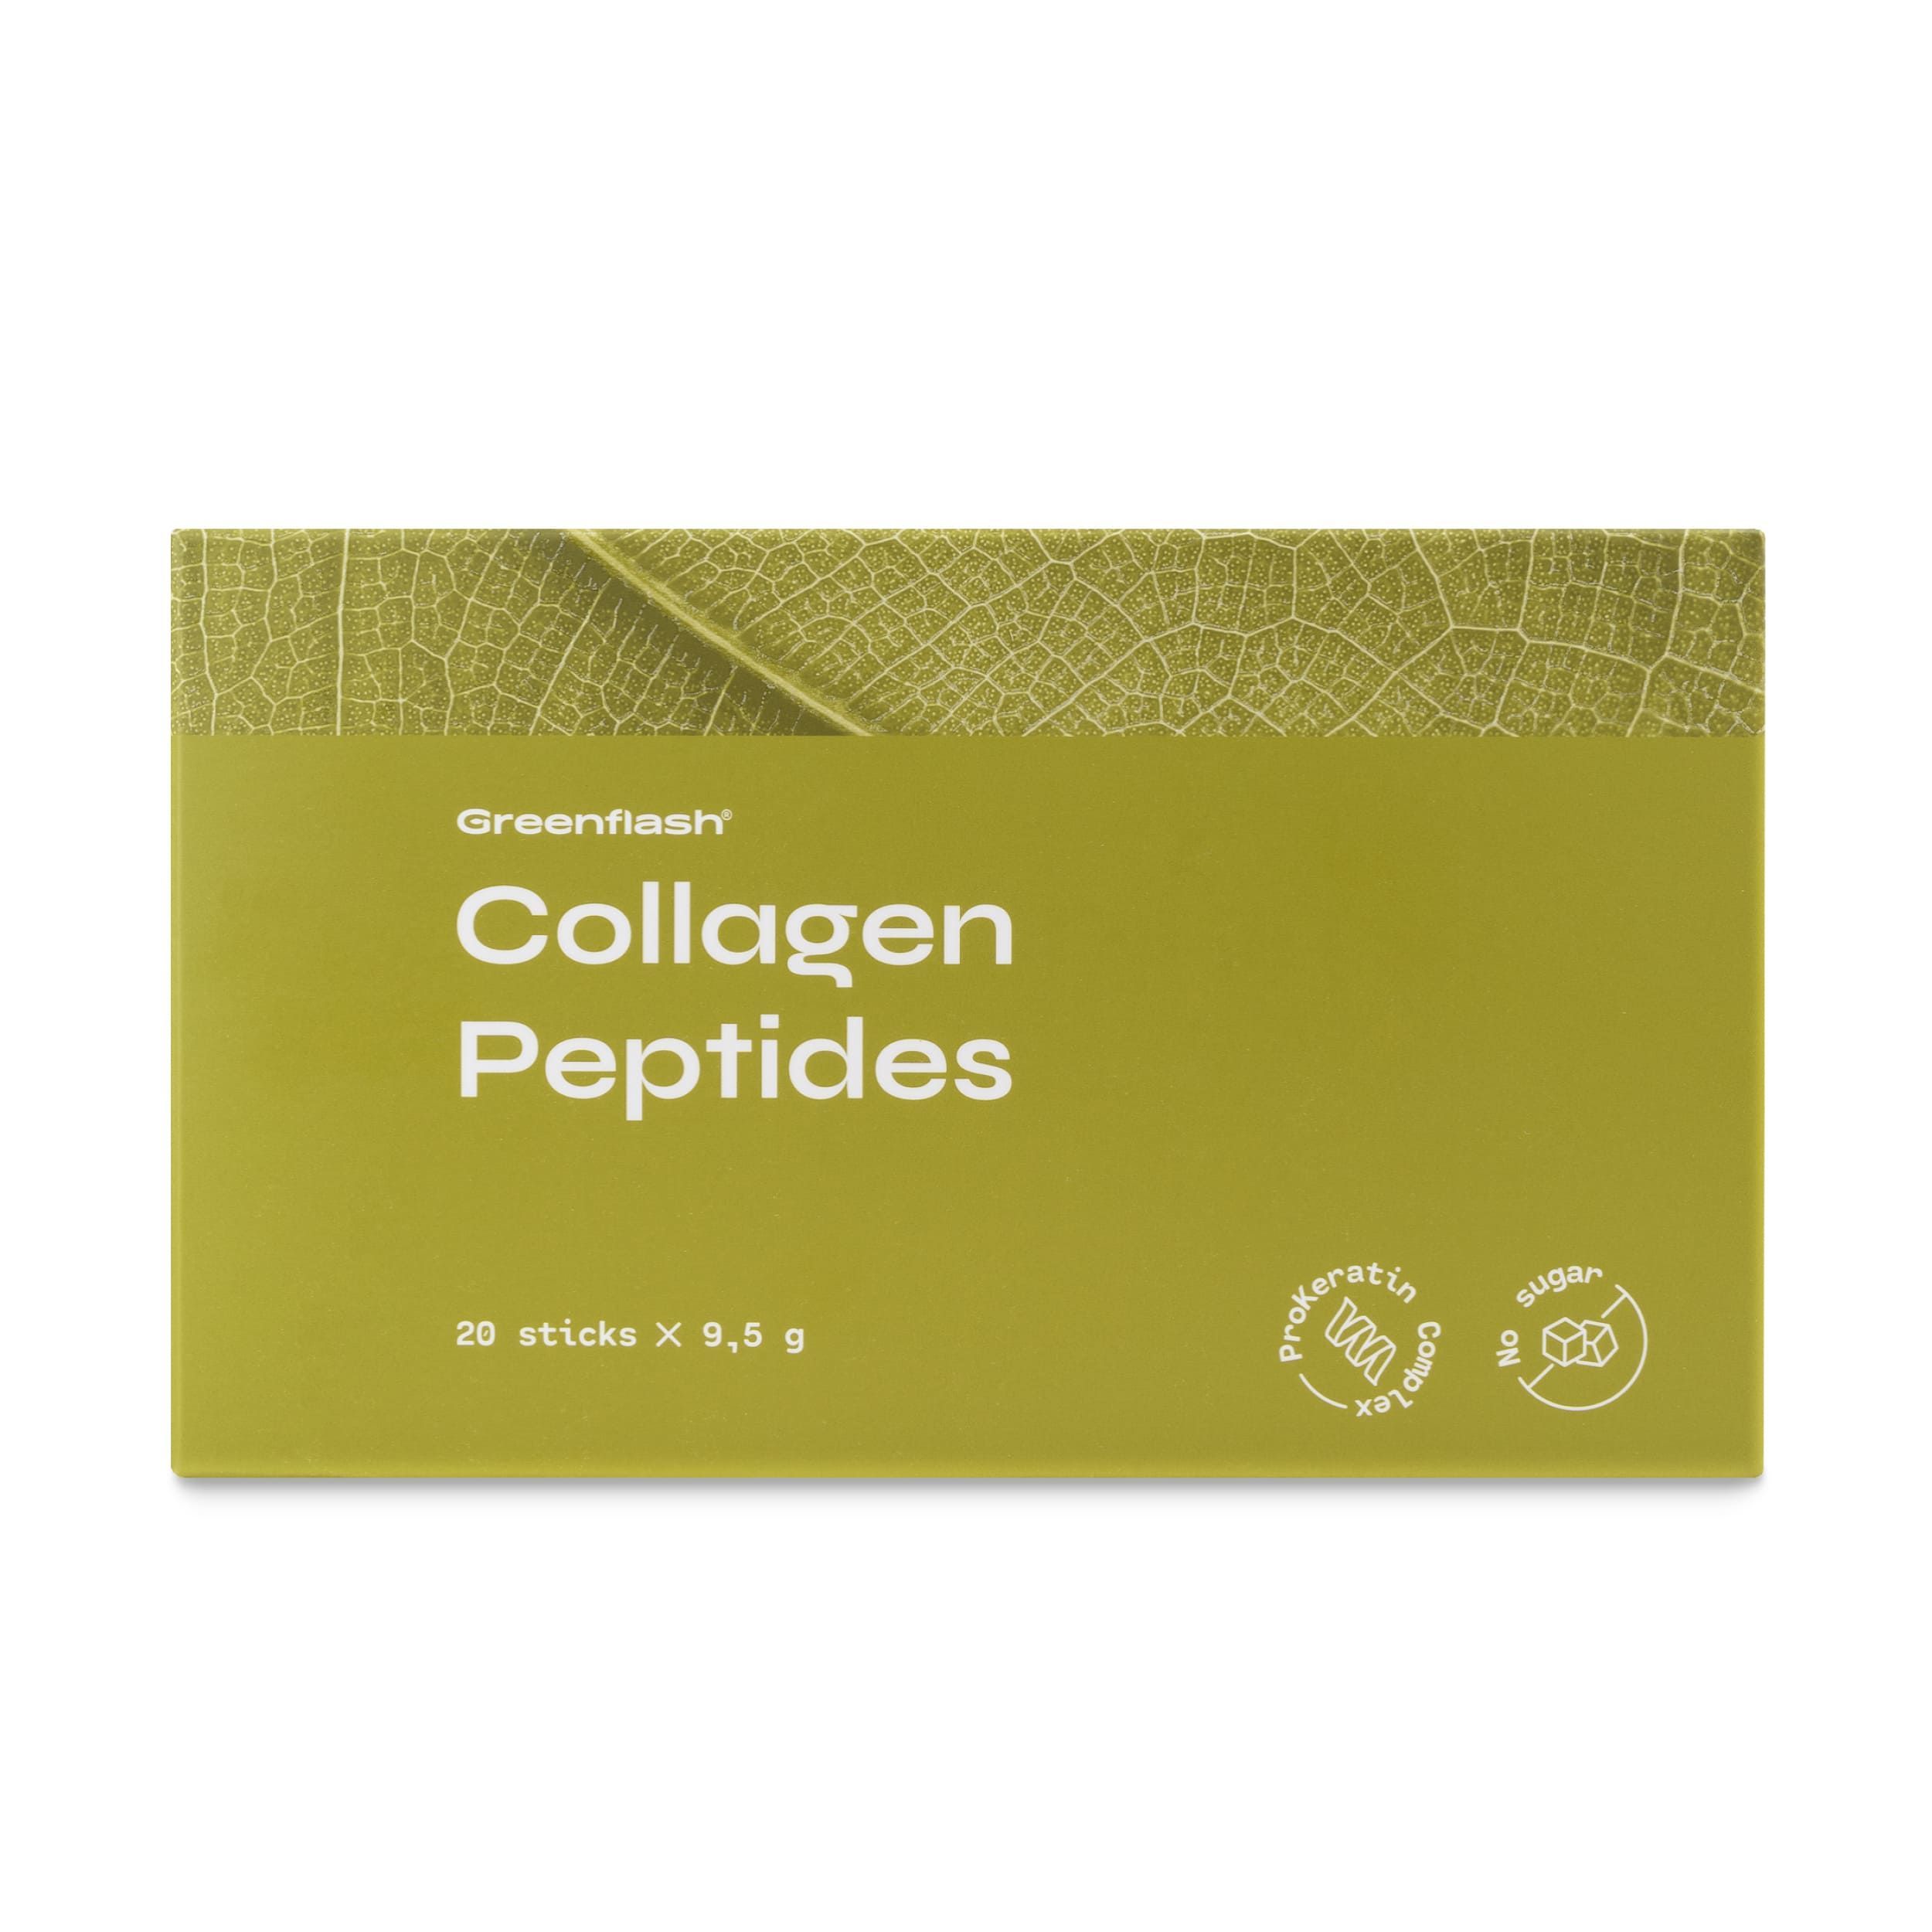 Коллаген 20 стиков. Коллаген пептидный 20 стиков. Collagen Peptides — «коллаген Пептидс». Коллаген Пептидс НЛ. Коллаген nl с пептидами.